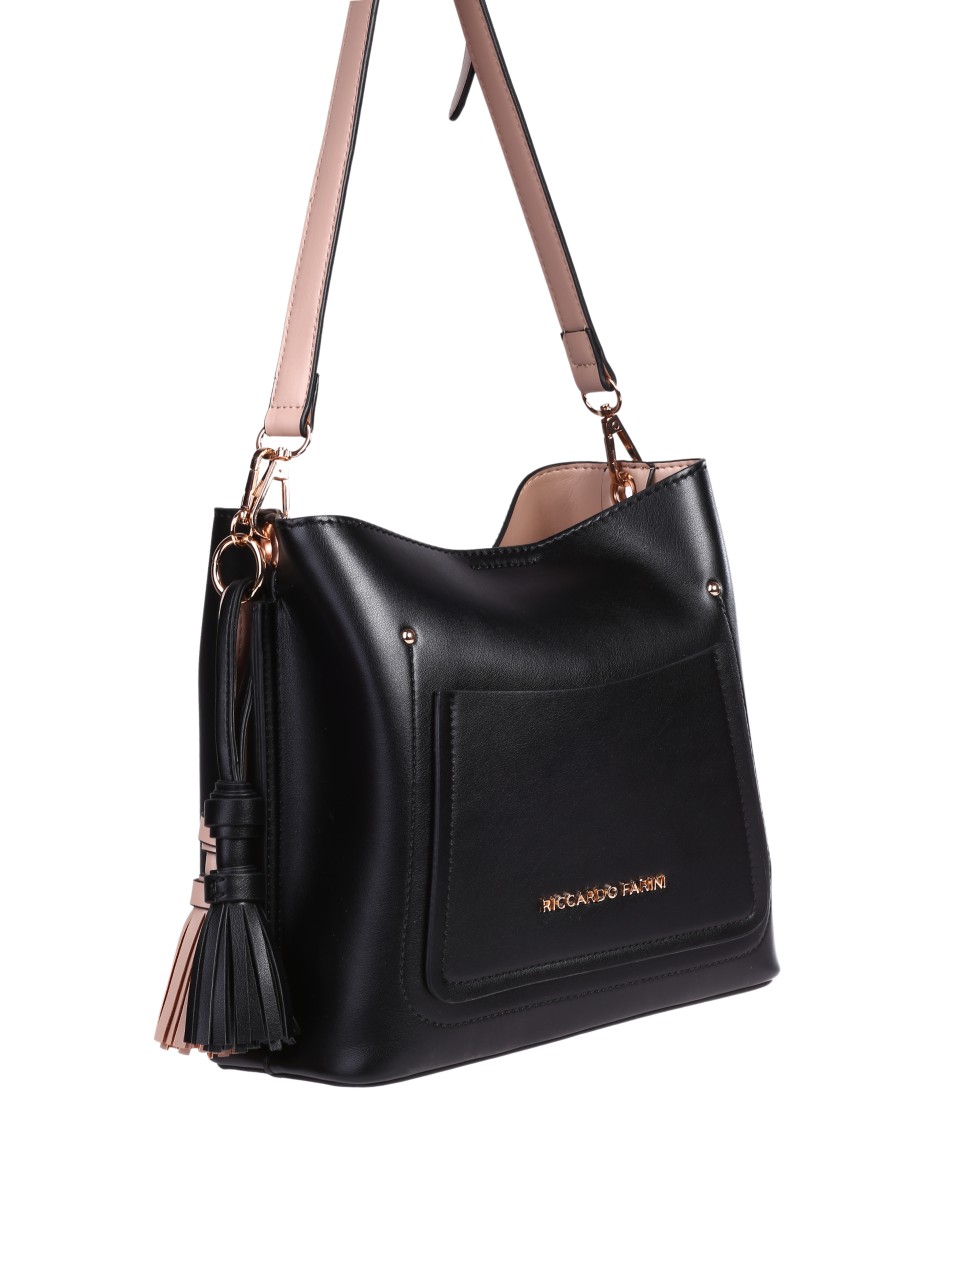 Ежедневна дамска чанта в черен/бежов цвят 9V-24309 black/beige